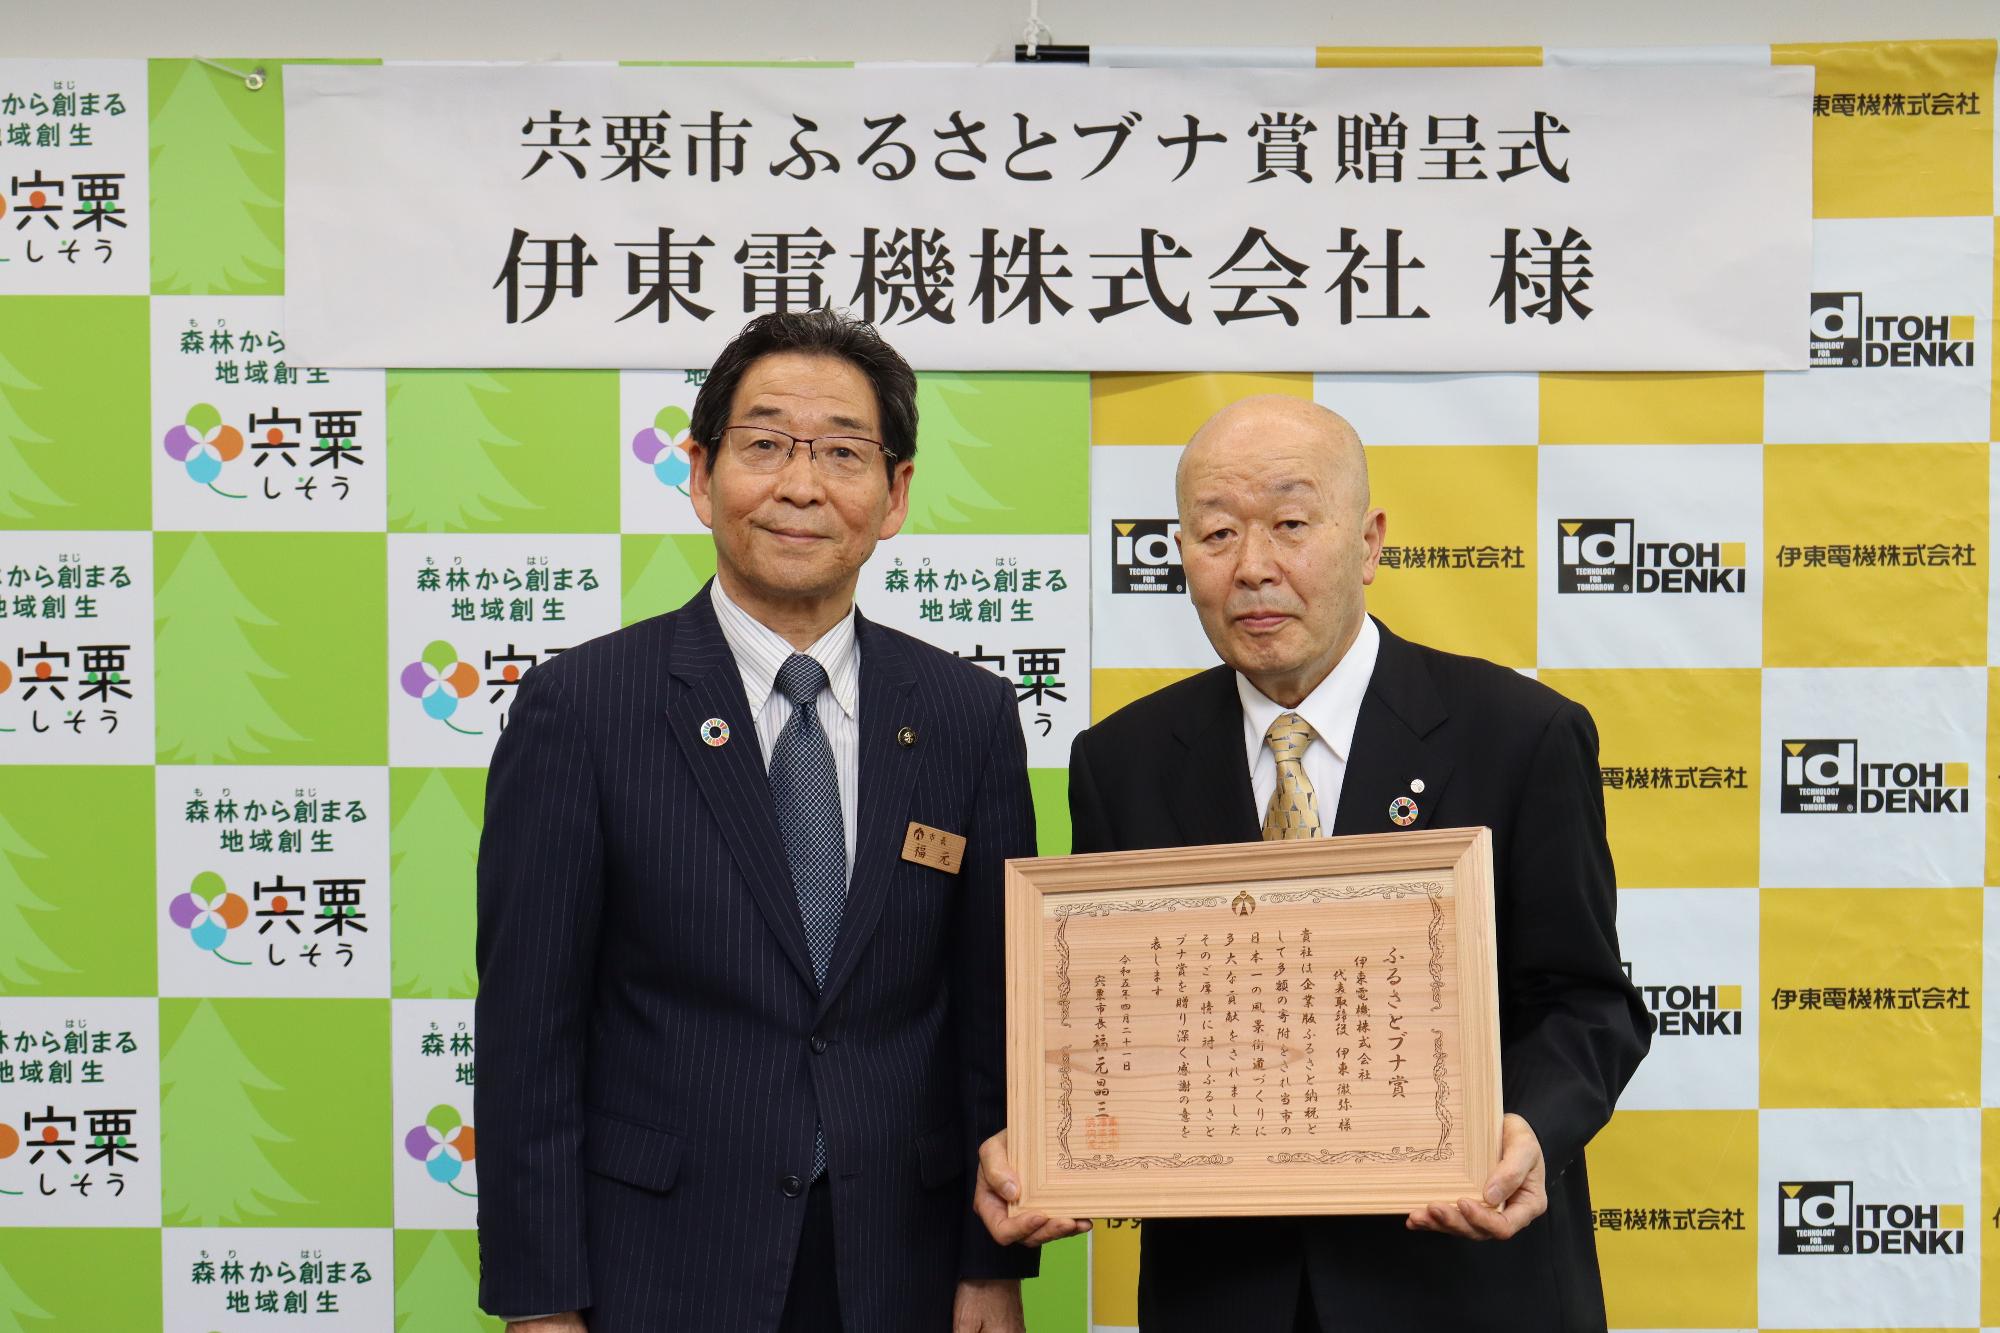 伊東電機の代表取締役会長 伊東一夫さんがブナ賞の木製の賞状を持ち、福元市長と並んで立っている写真